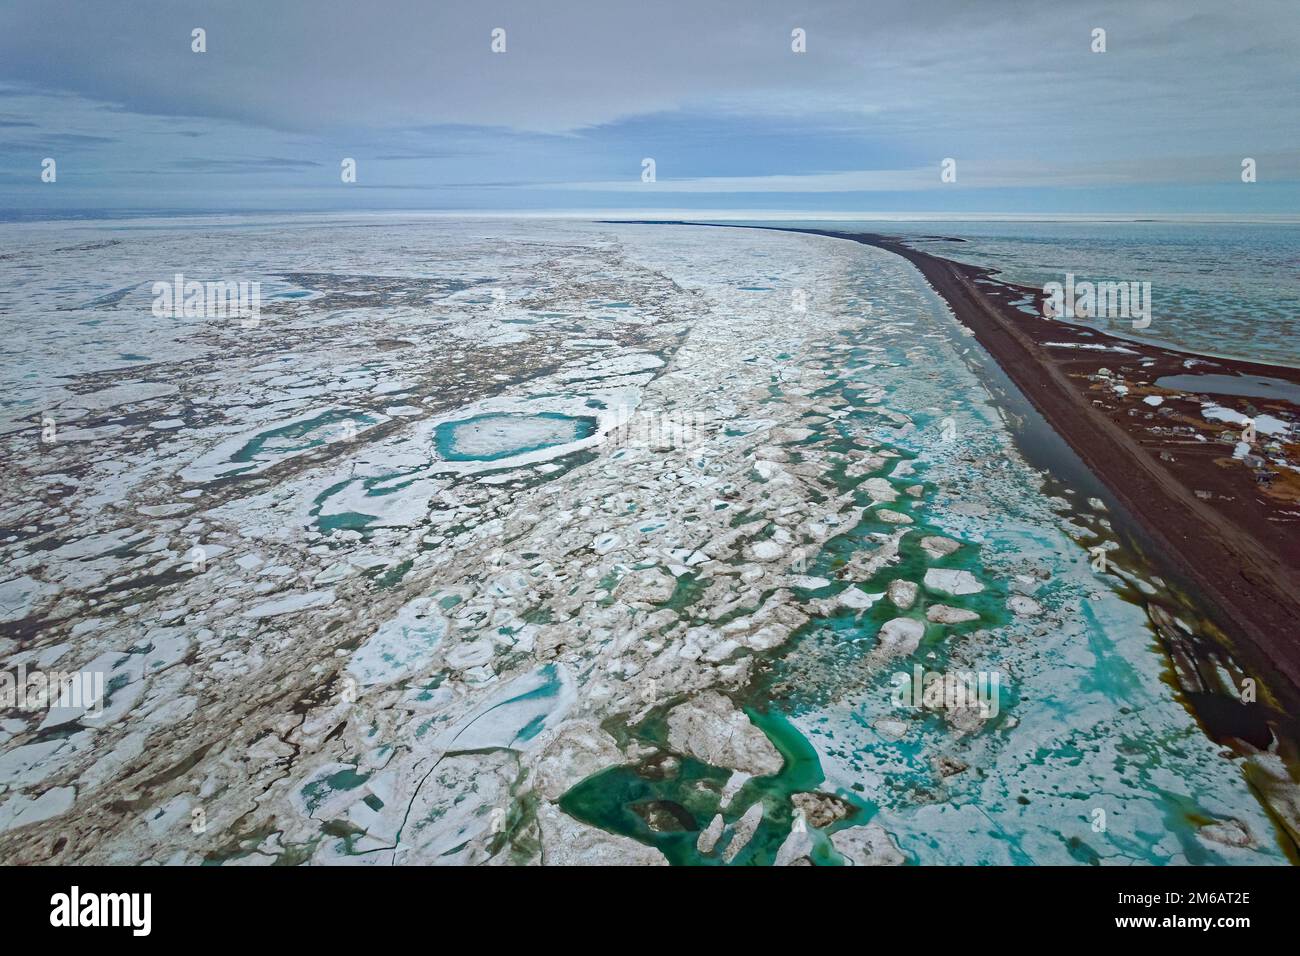 Images de drones, côte glacée, déglaçage, brouille, brouette entre le détroit et le point, océan Arctique, mer de Chukchi, Arctique, Alaska du Nord, ÉTATS-UNIS Banque D'Images